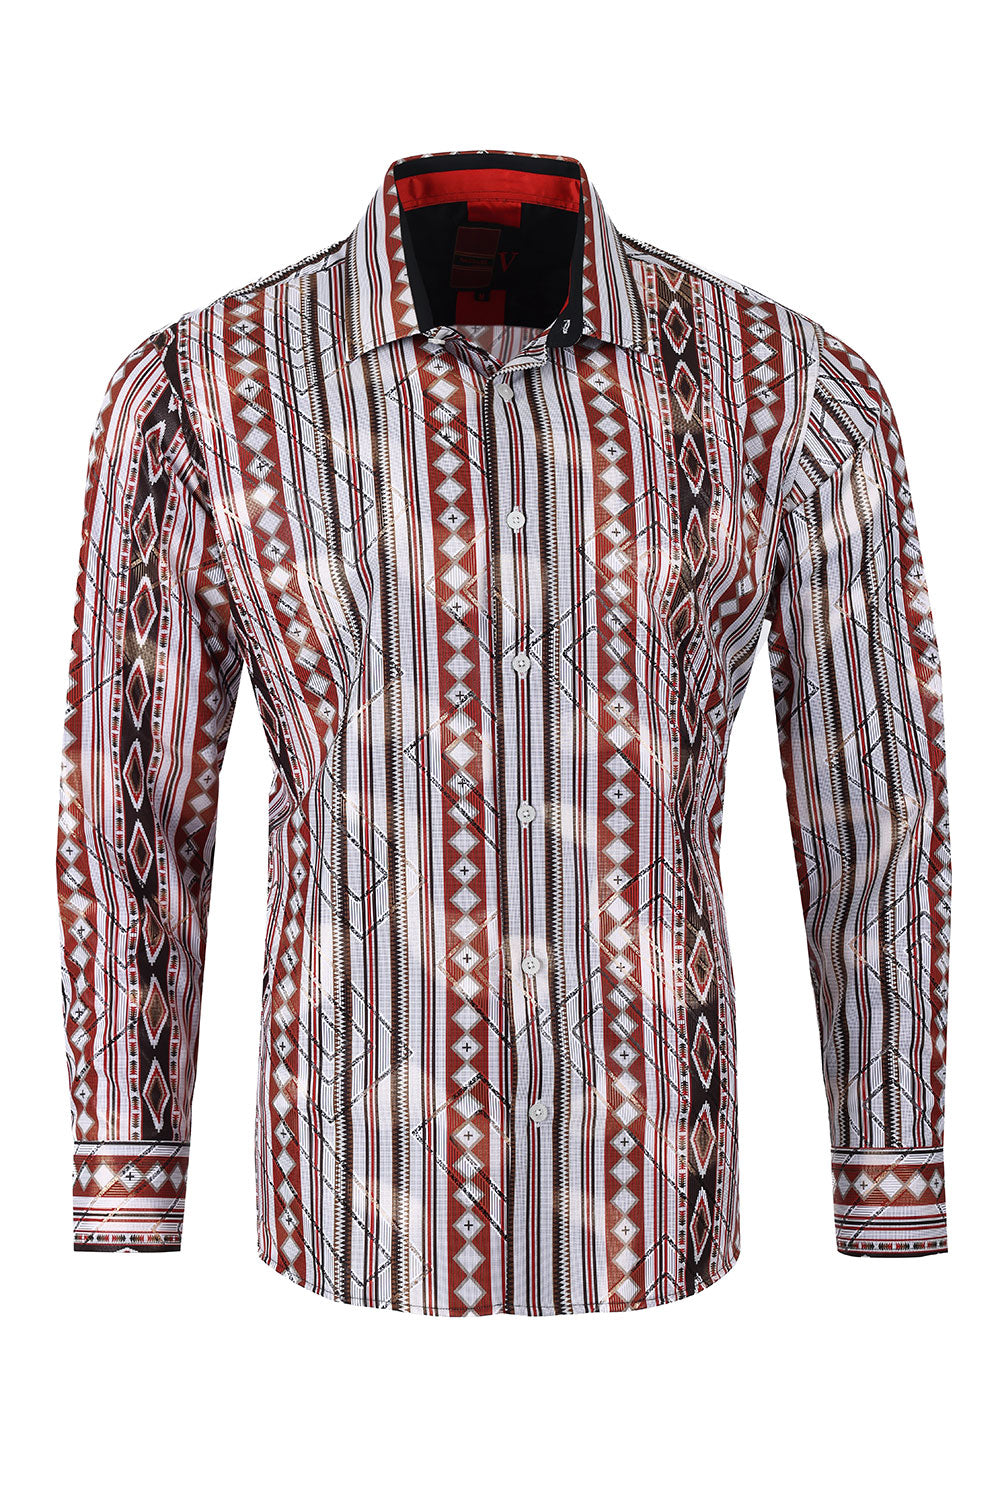 Vassari Men's Printed Striped Geometric Long Sleeve Shirts 2VS145